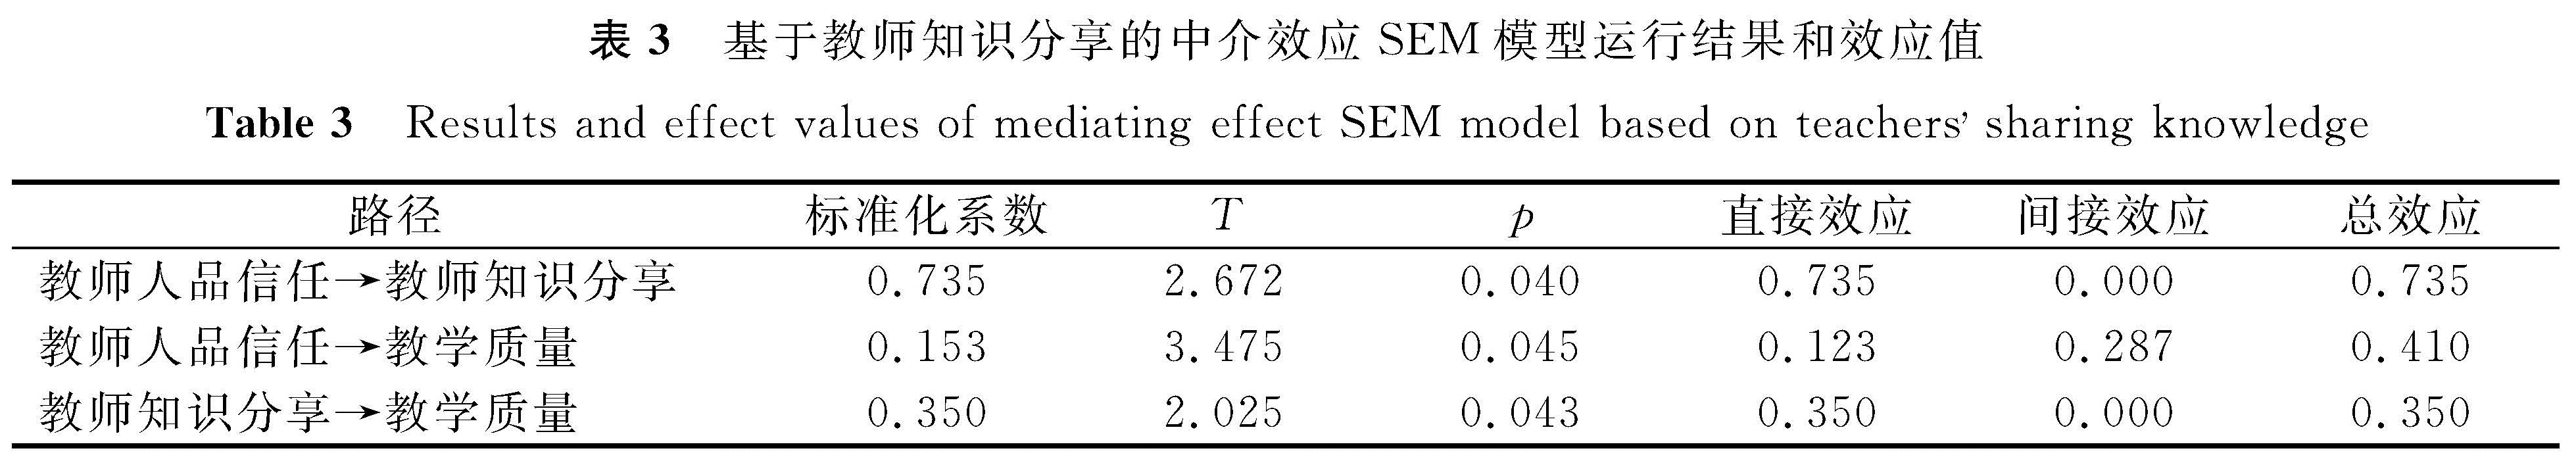 表3 基于教师知识分享的中介效应SEM模型运行结果和效应值<br/>Table 3 Results and effect values of mediating effect SEM model based on teachers sharing knowledge